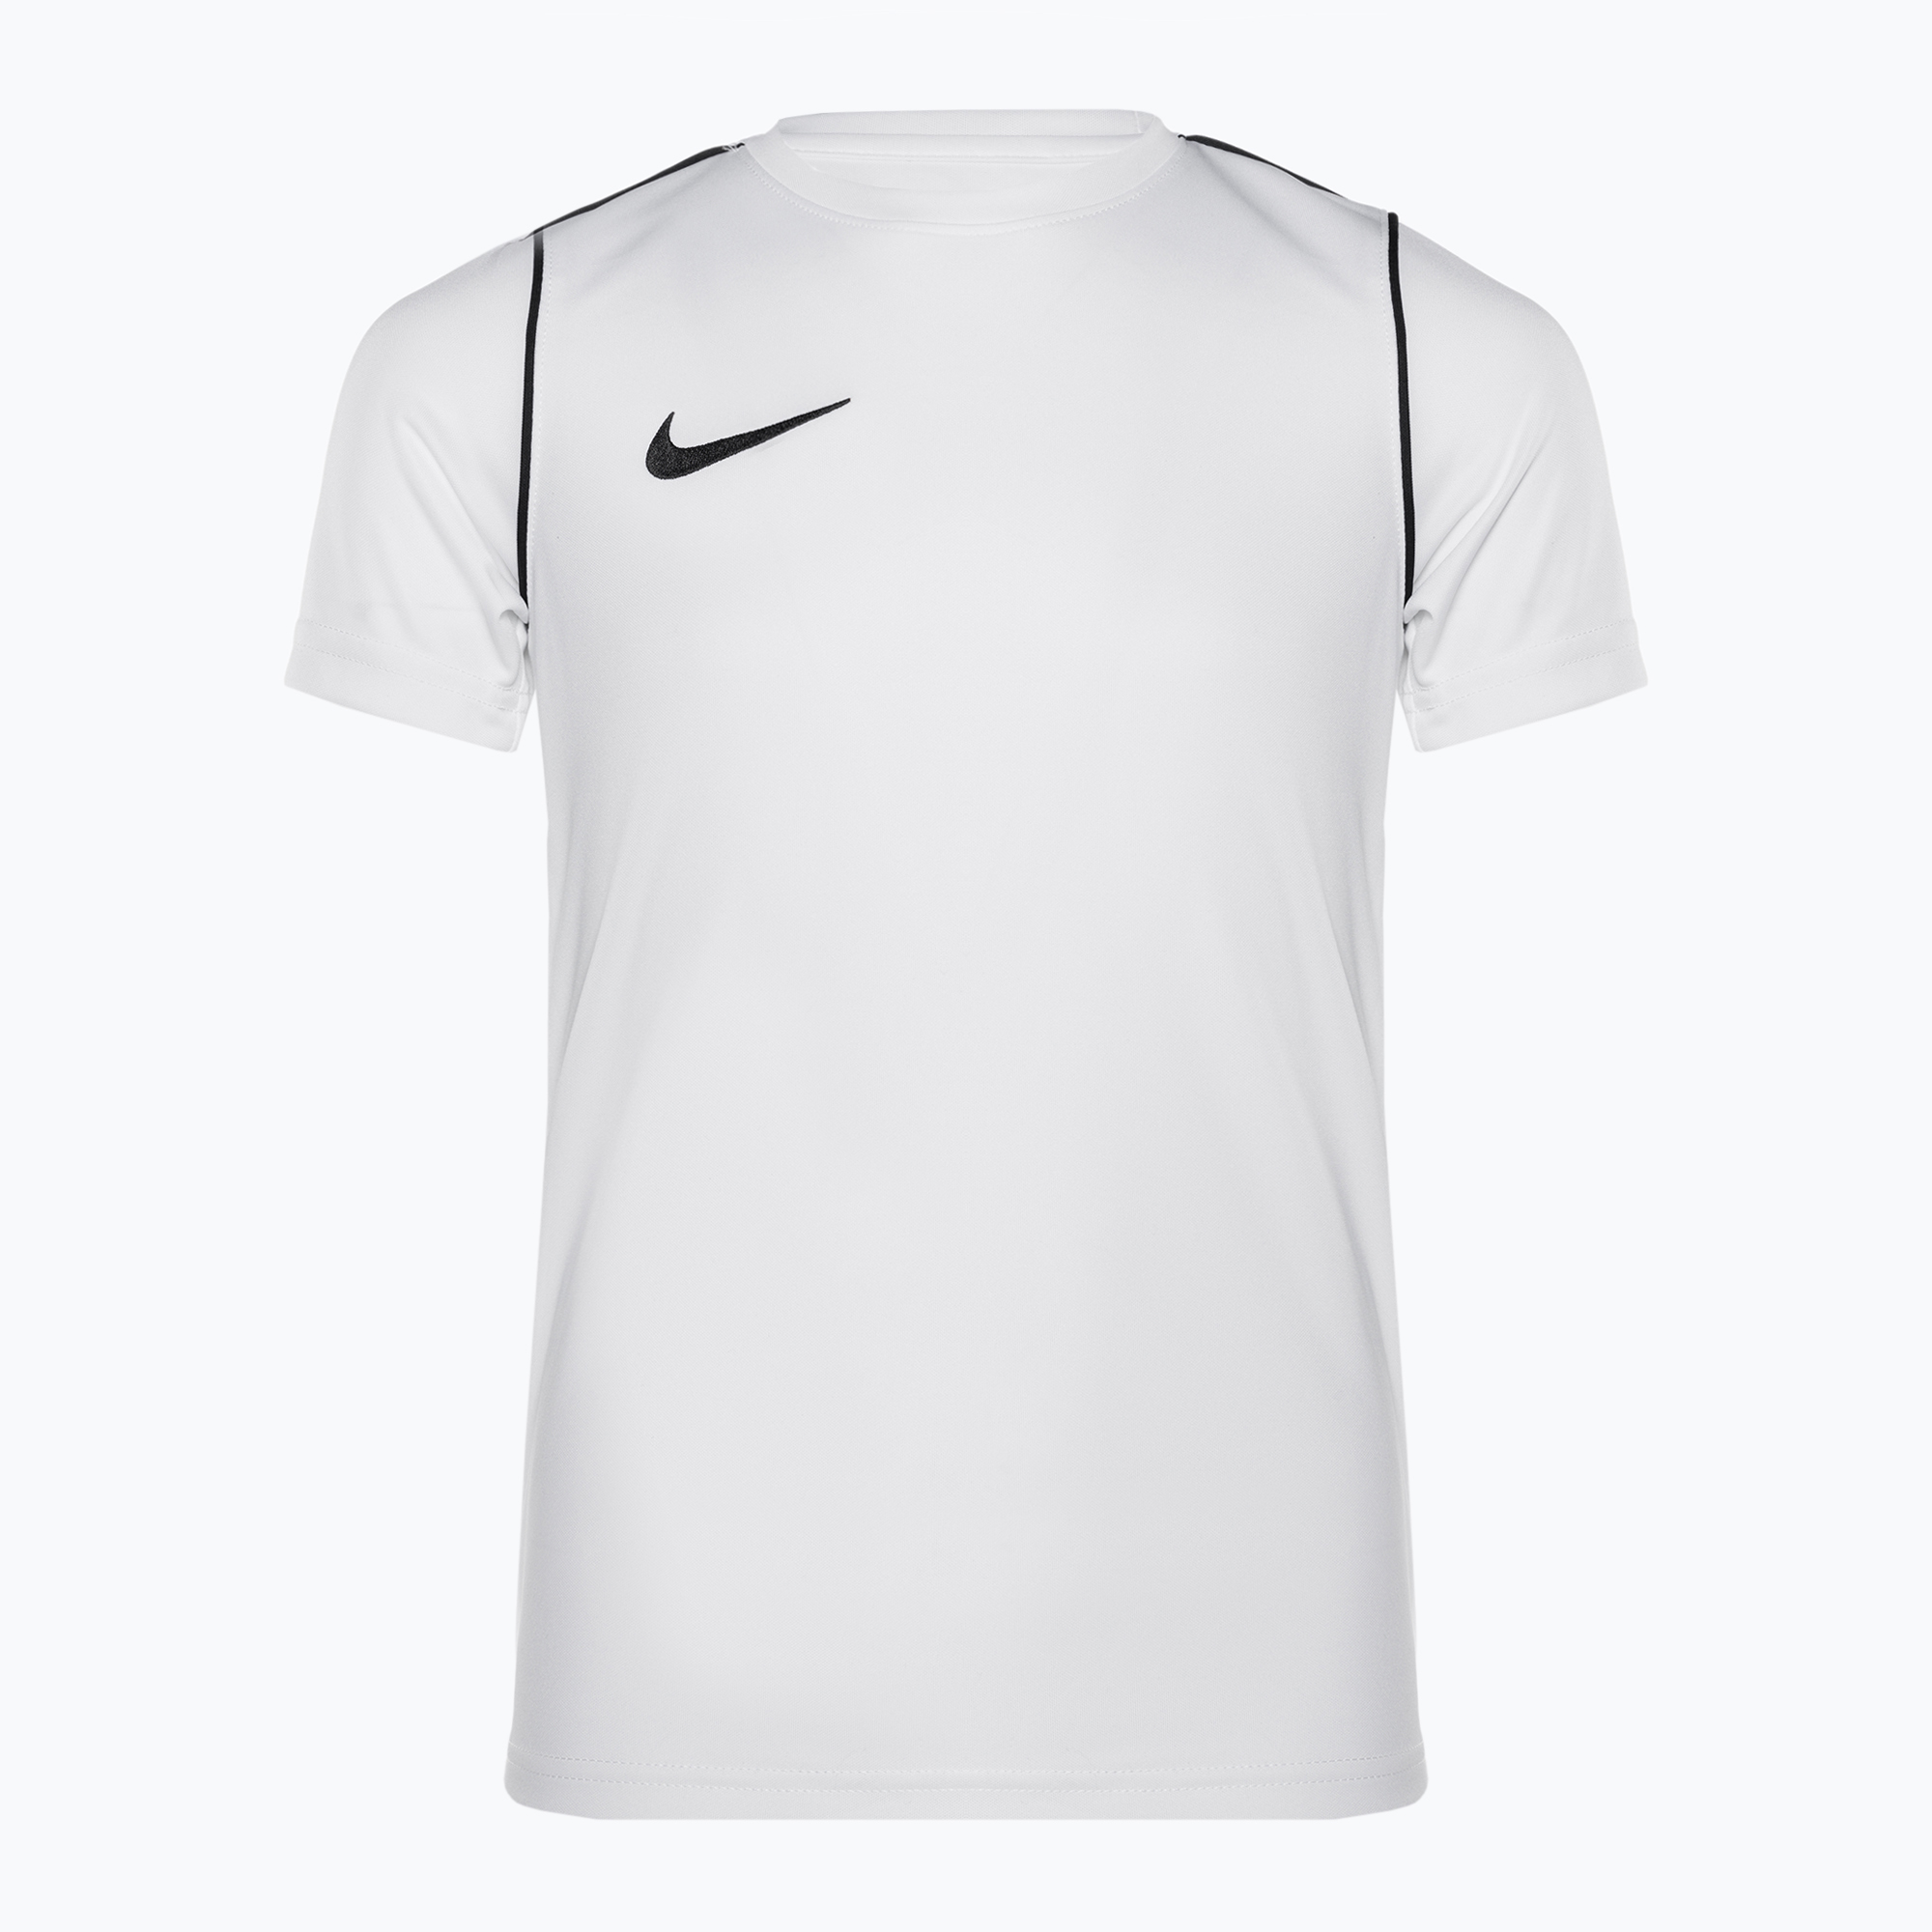 Detský futbalový dres Nike Dri-Fit Park 20 biely/čierny/čierny